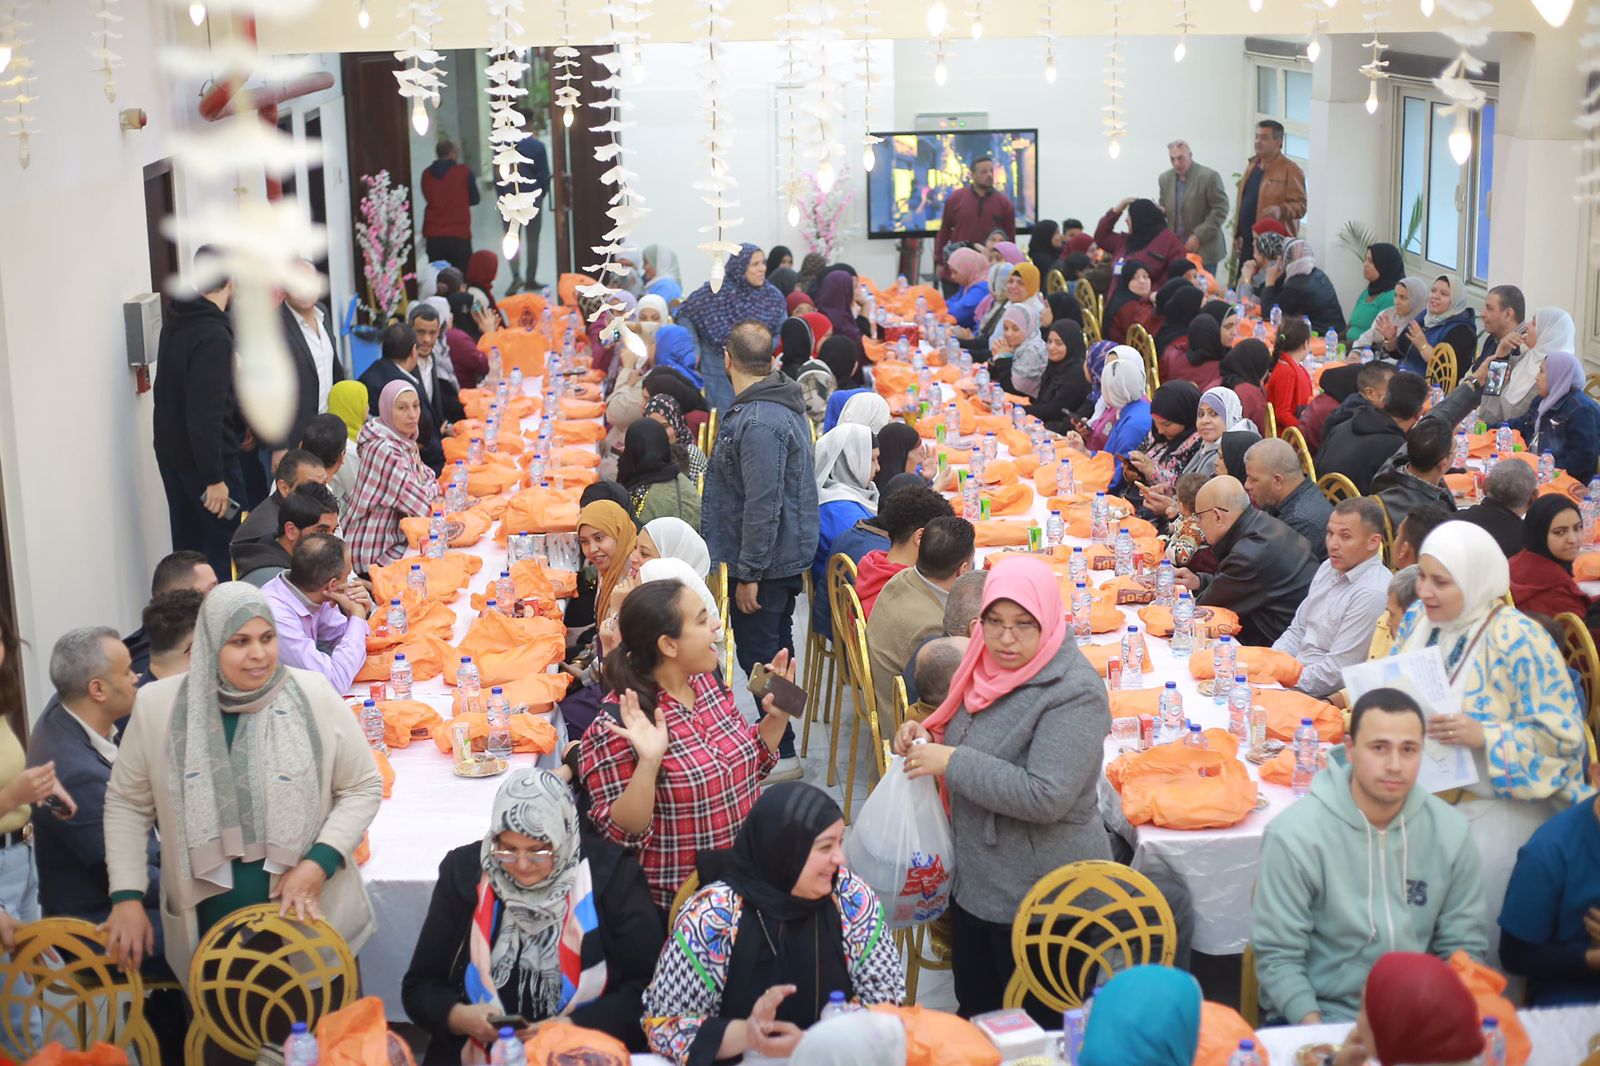 معهد تيودور بلهارس للأبحاث ينظم مأدبة إفطار رمضانية جماعية